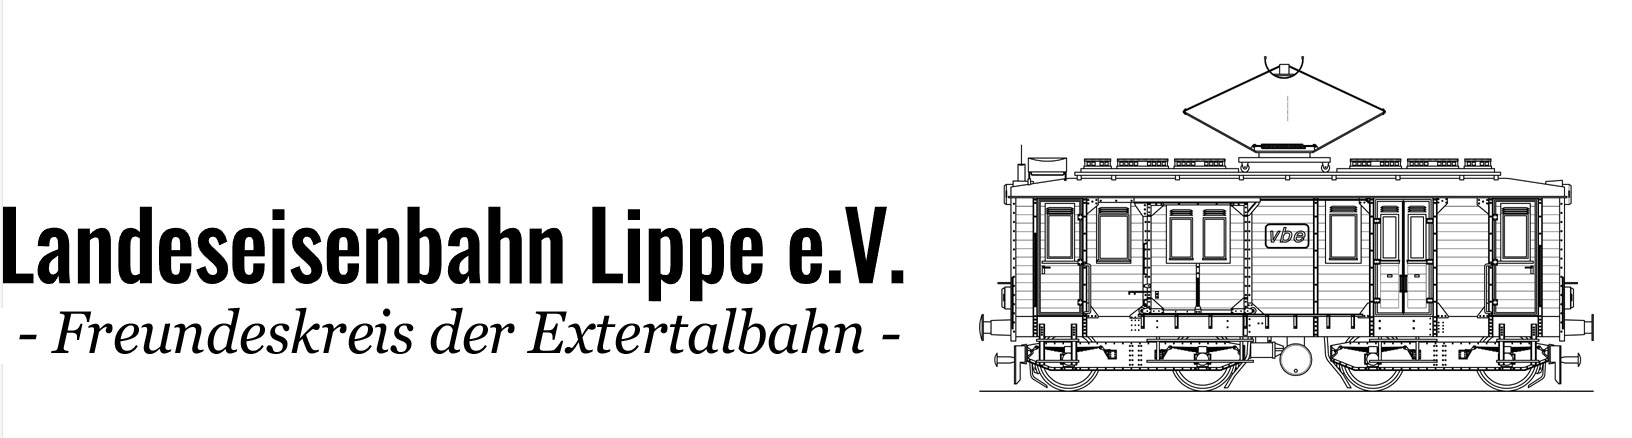 Landeseisenbahn Lippe e.V.